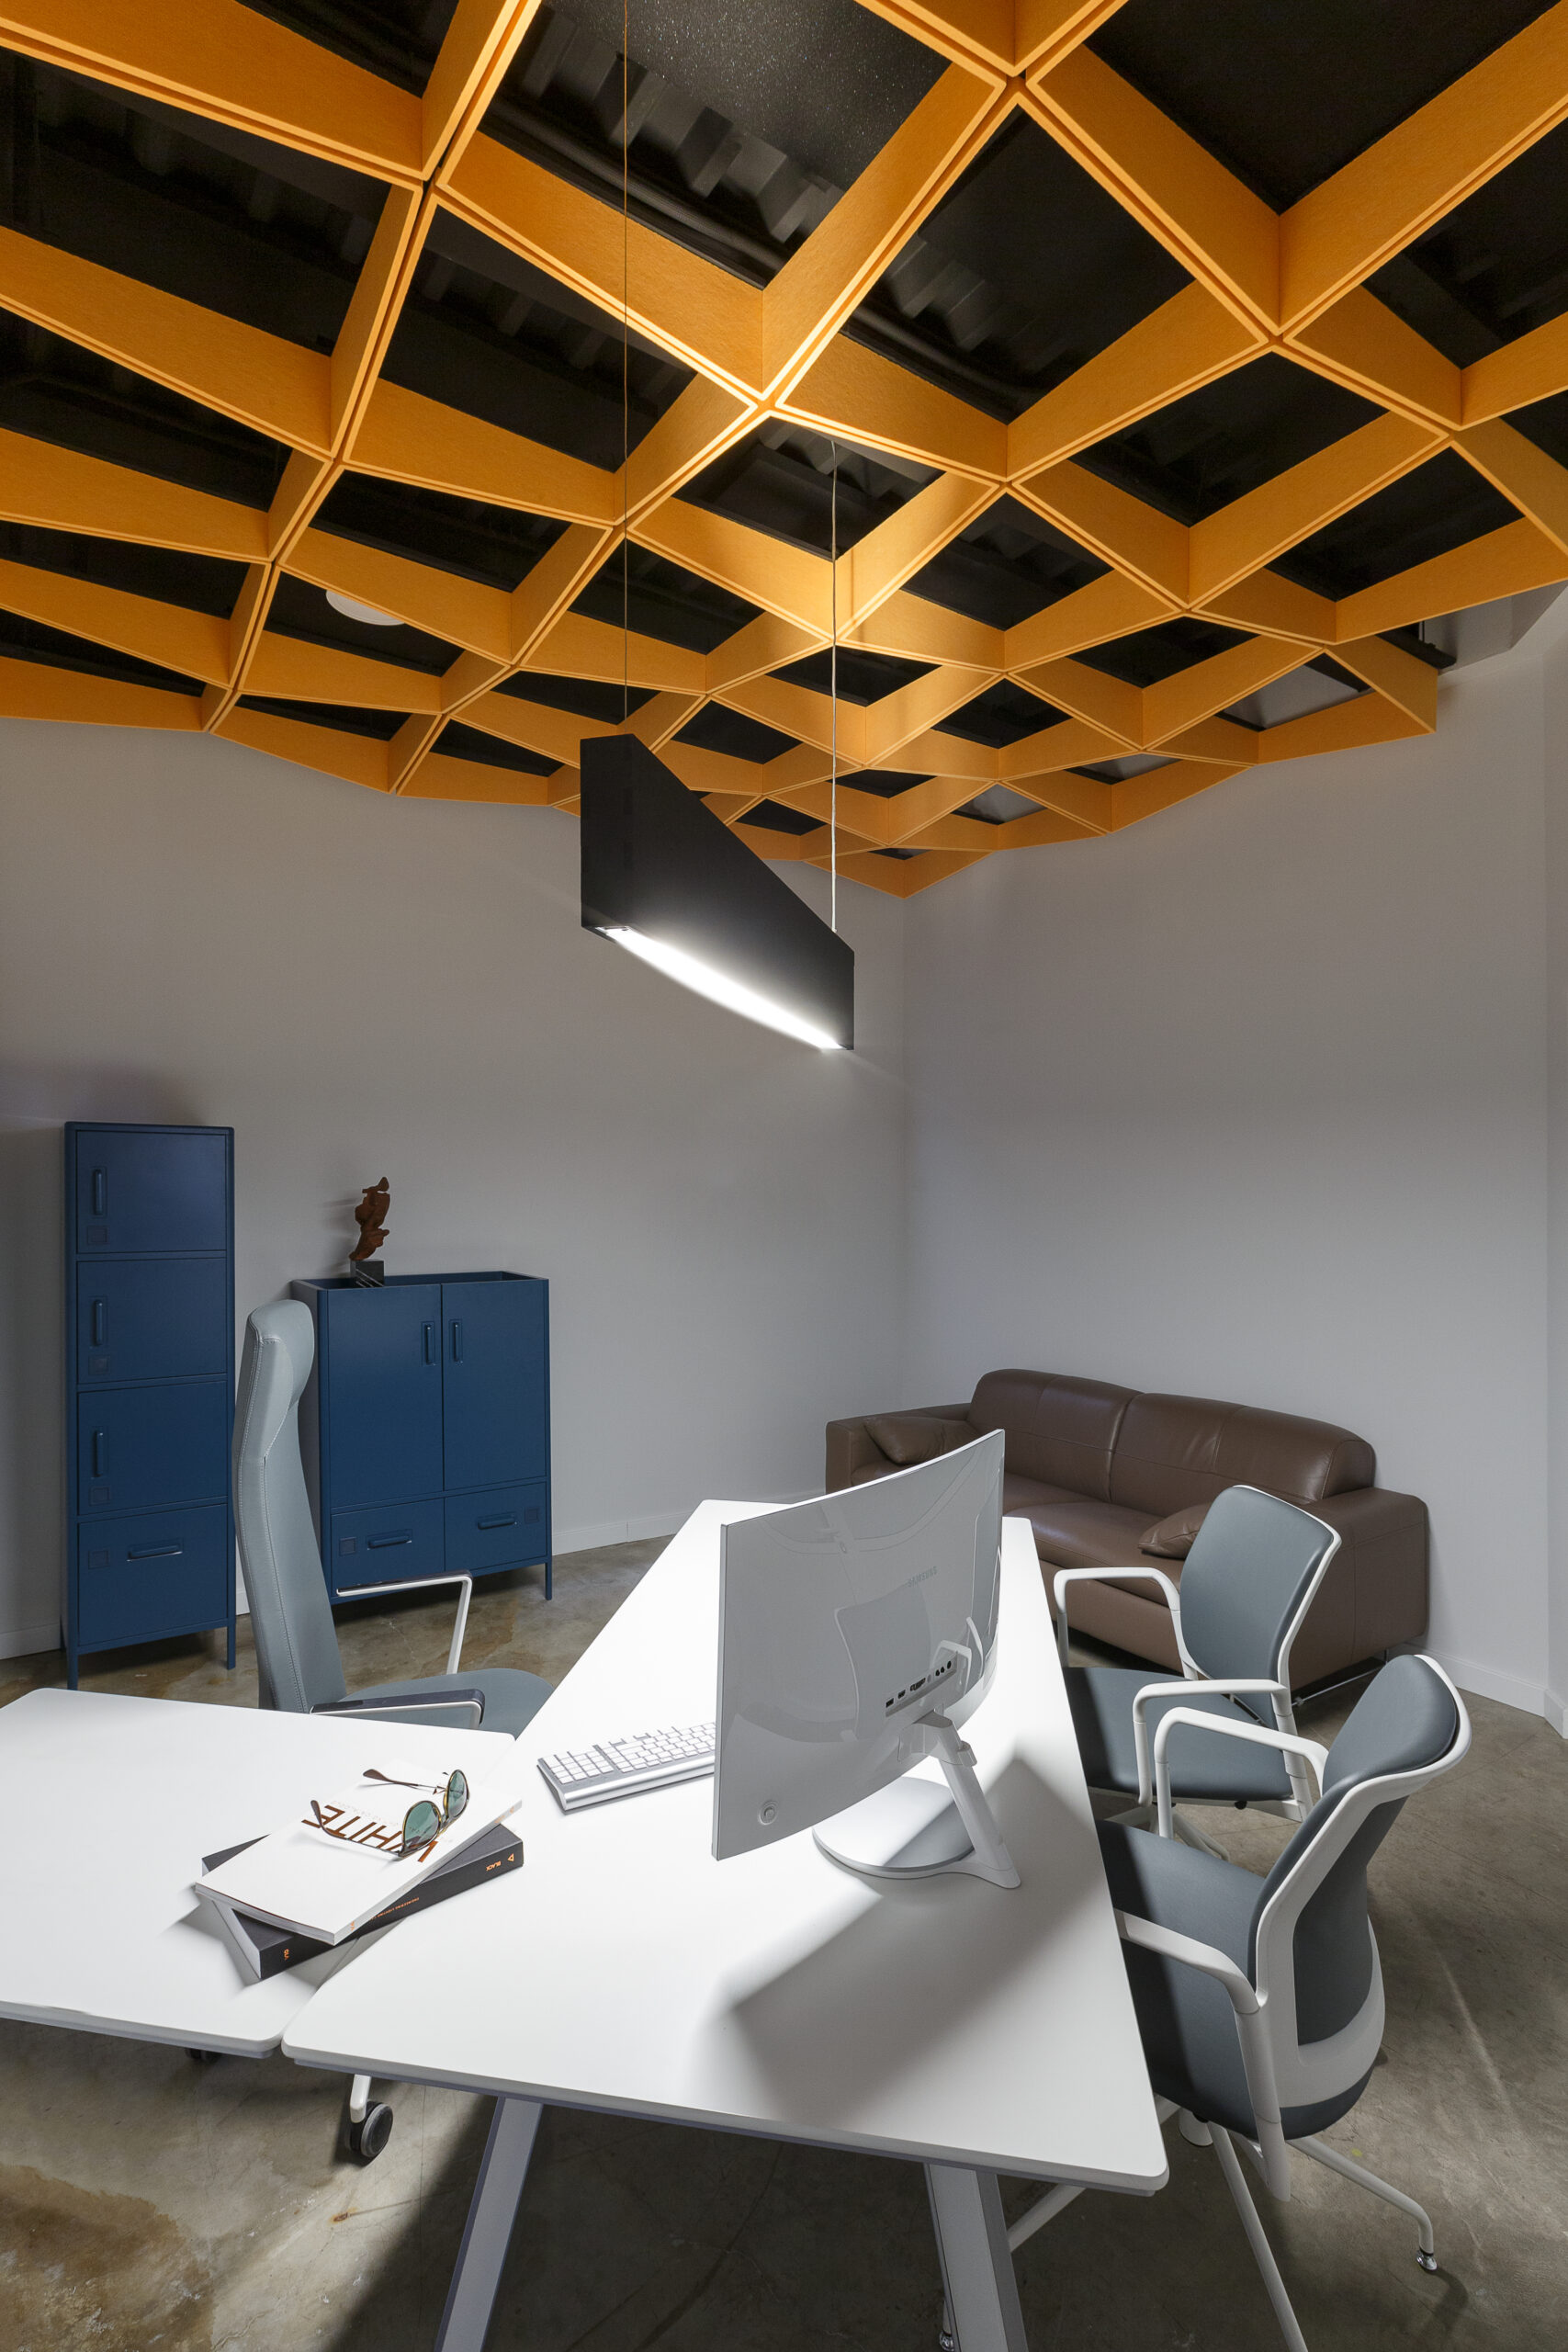 soluciones acústicas para oficinas - techos fonoabsorventes